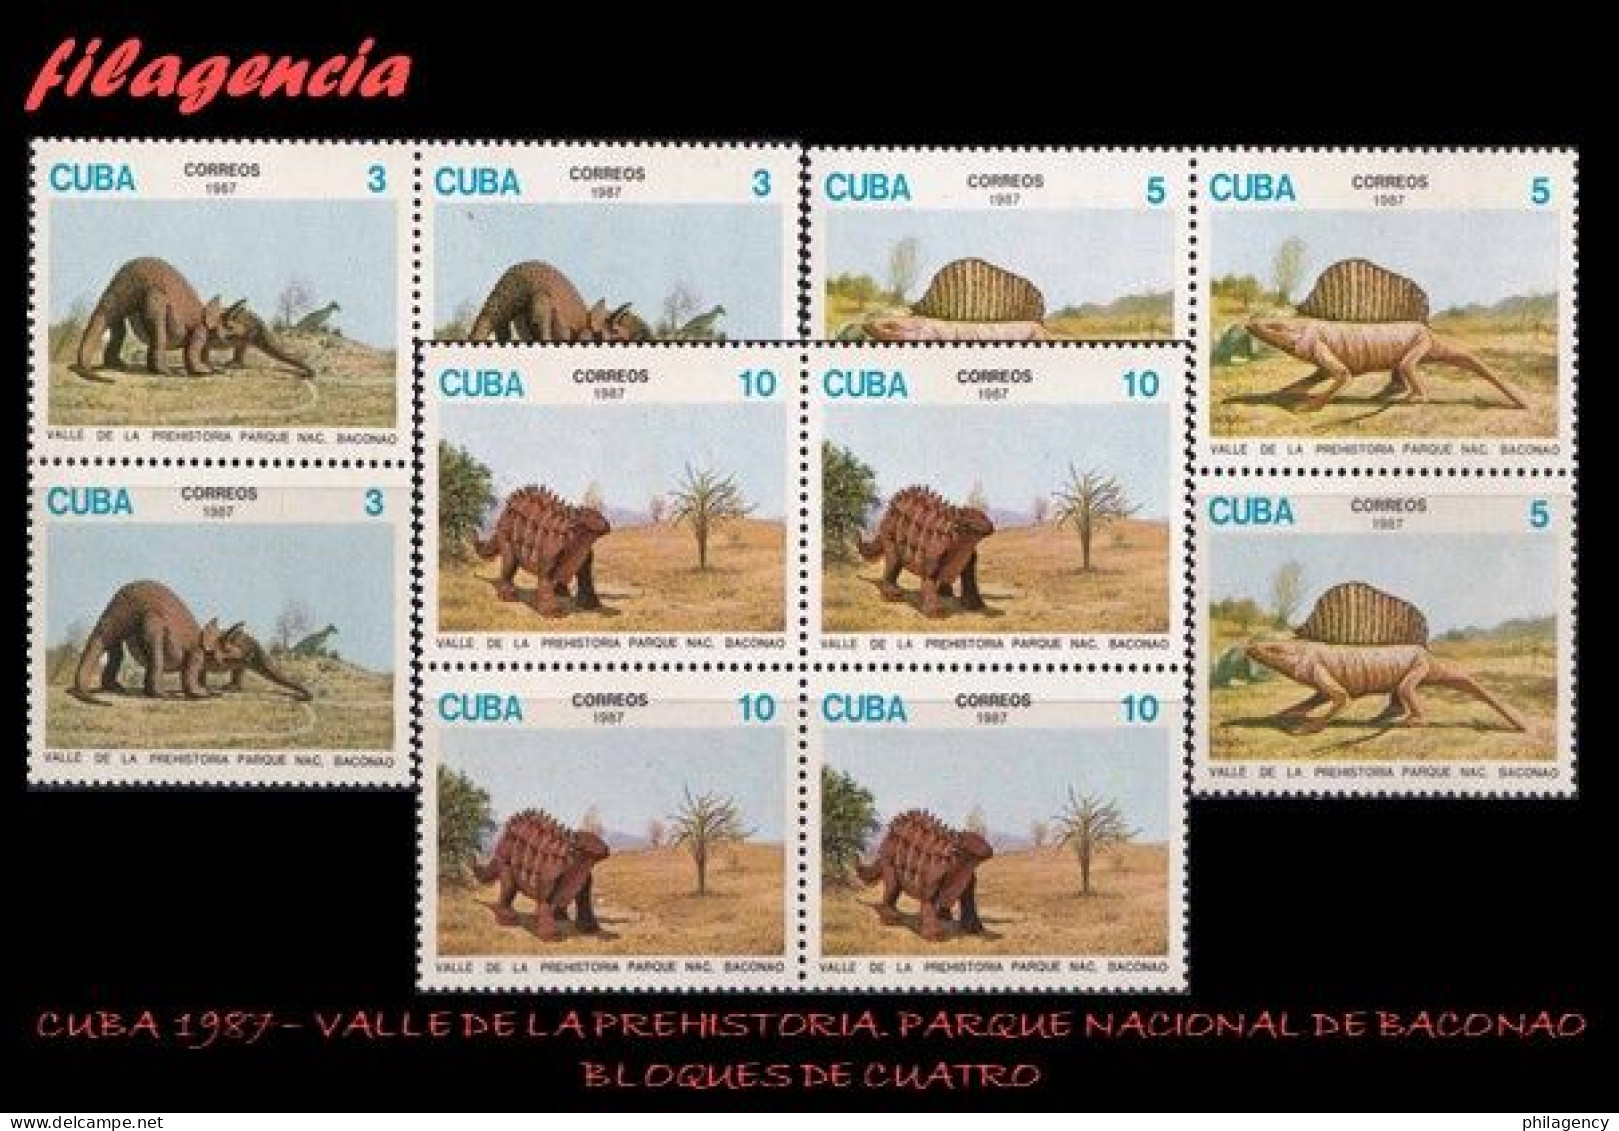 CUBA. BLOQUES DE CUATRO. 1987-14 VALLE DE LA PREHISTORIA. PARQUE NACIONAL DE BACONAO. DINOSAURIOS - Nuevos